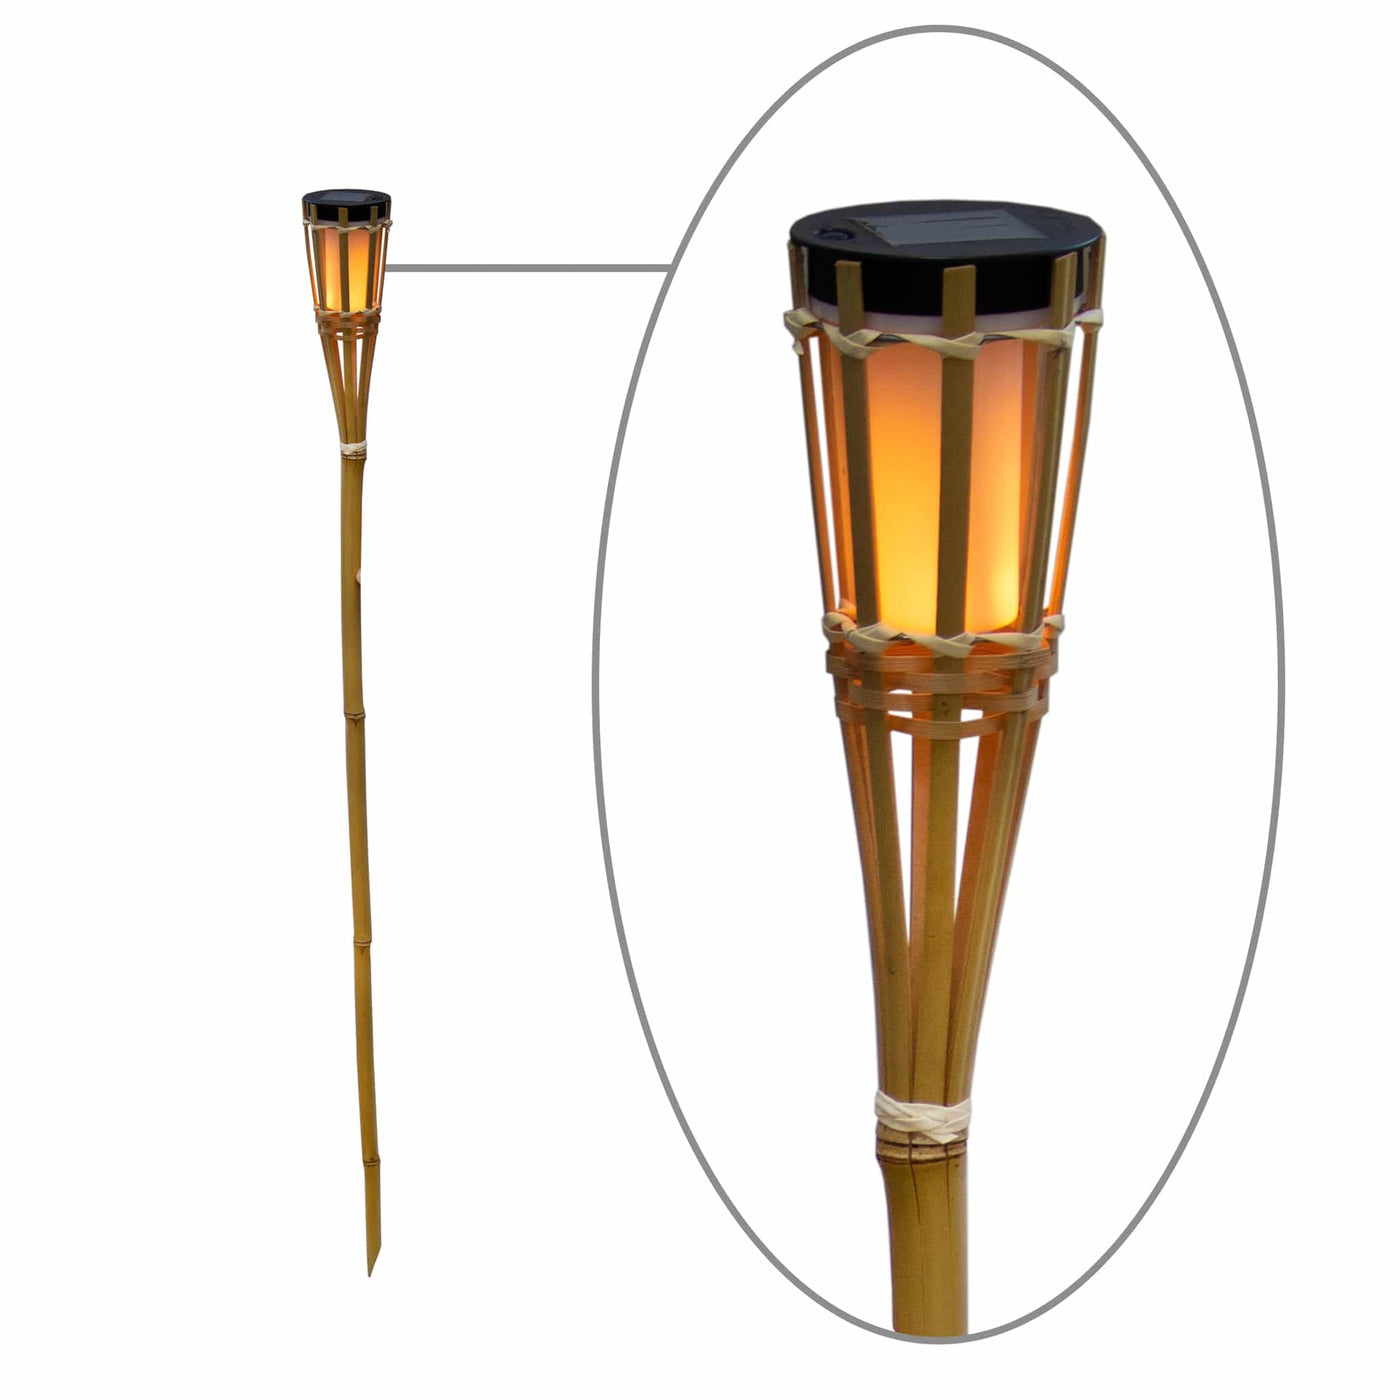 Hiama de Newgarden : lampe solaire en bambou naturel, éclairage écologique. Capteur crépusculaire, effet flamme réaliste, jusqu'à 16 heures d'autonomie.